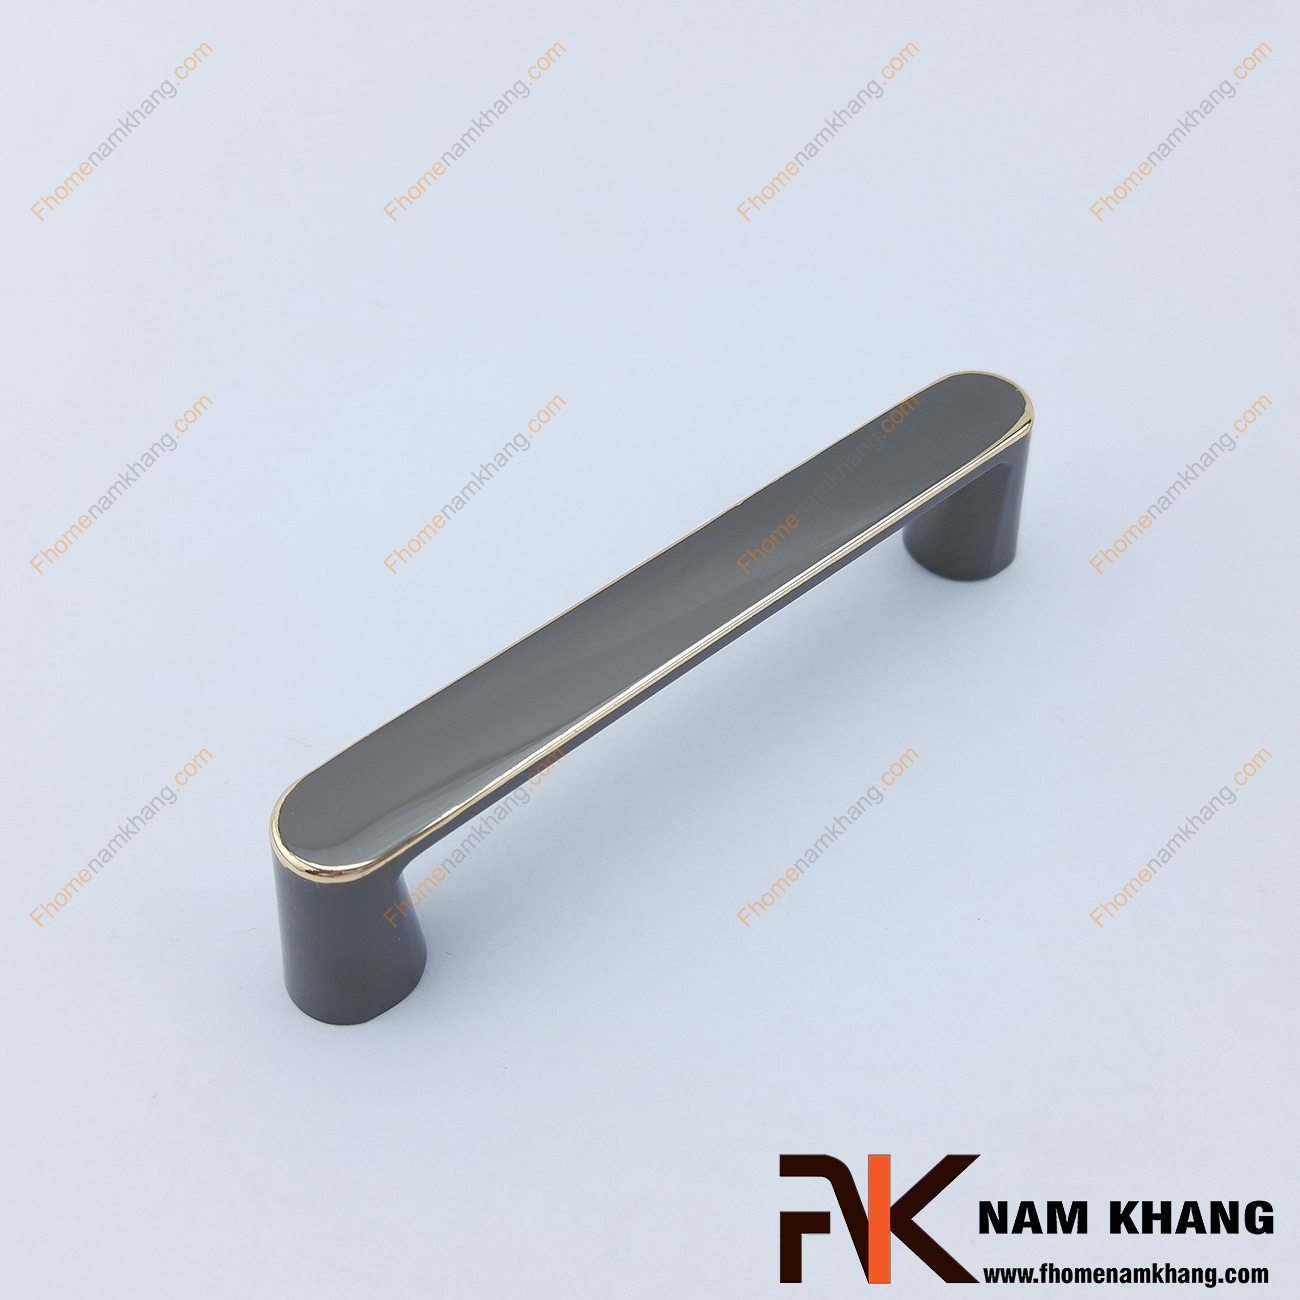 Tay nắm tủ dạng thanh dẹp màu ghi viền vàng NK421-GV có thiết kế đơn giản với phần thân dẹp và phần đế hình bán trụ ở hai đầu của tay nắm